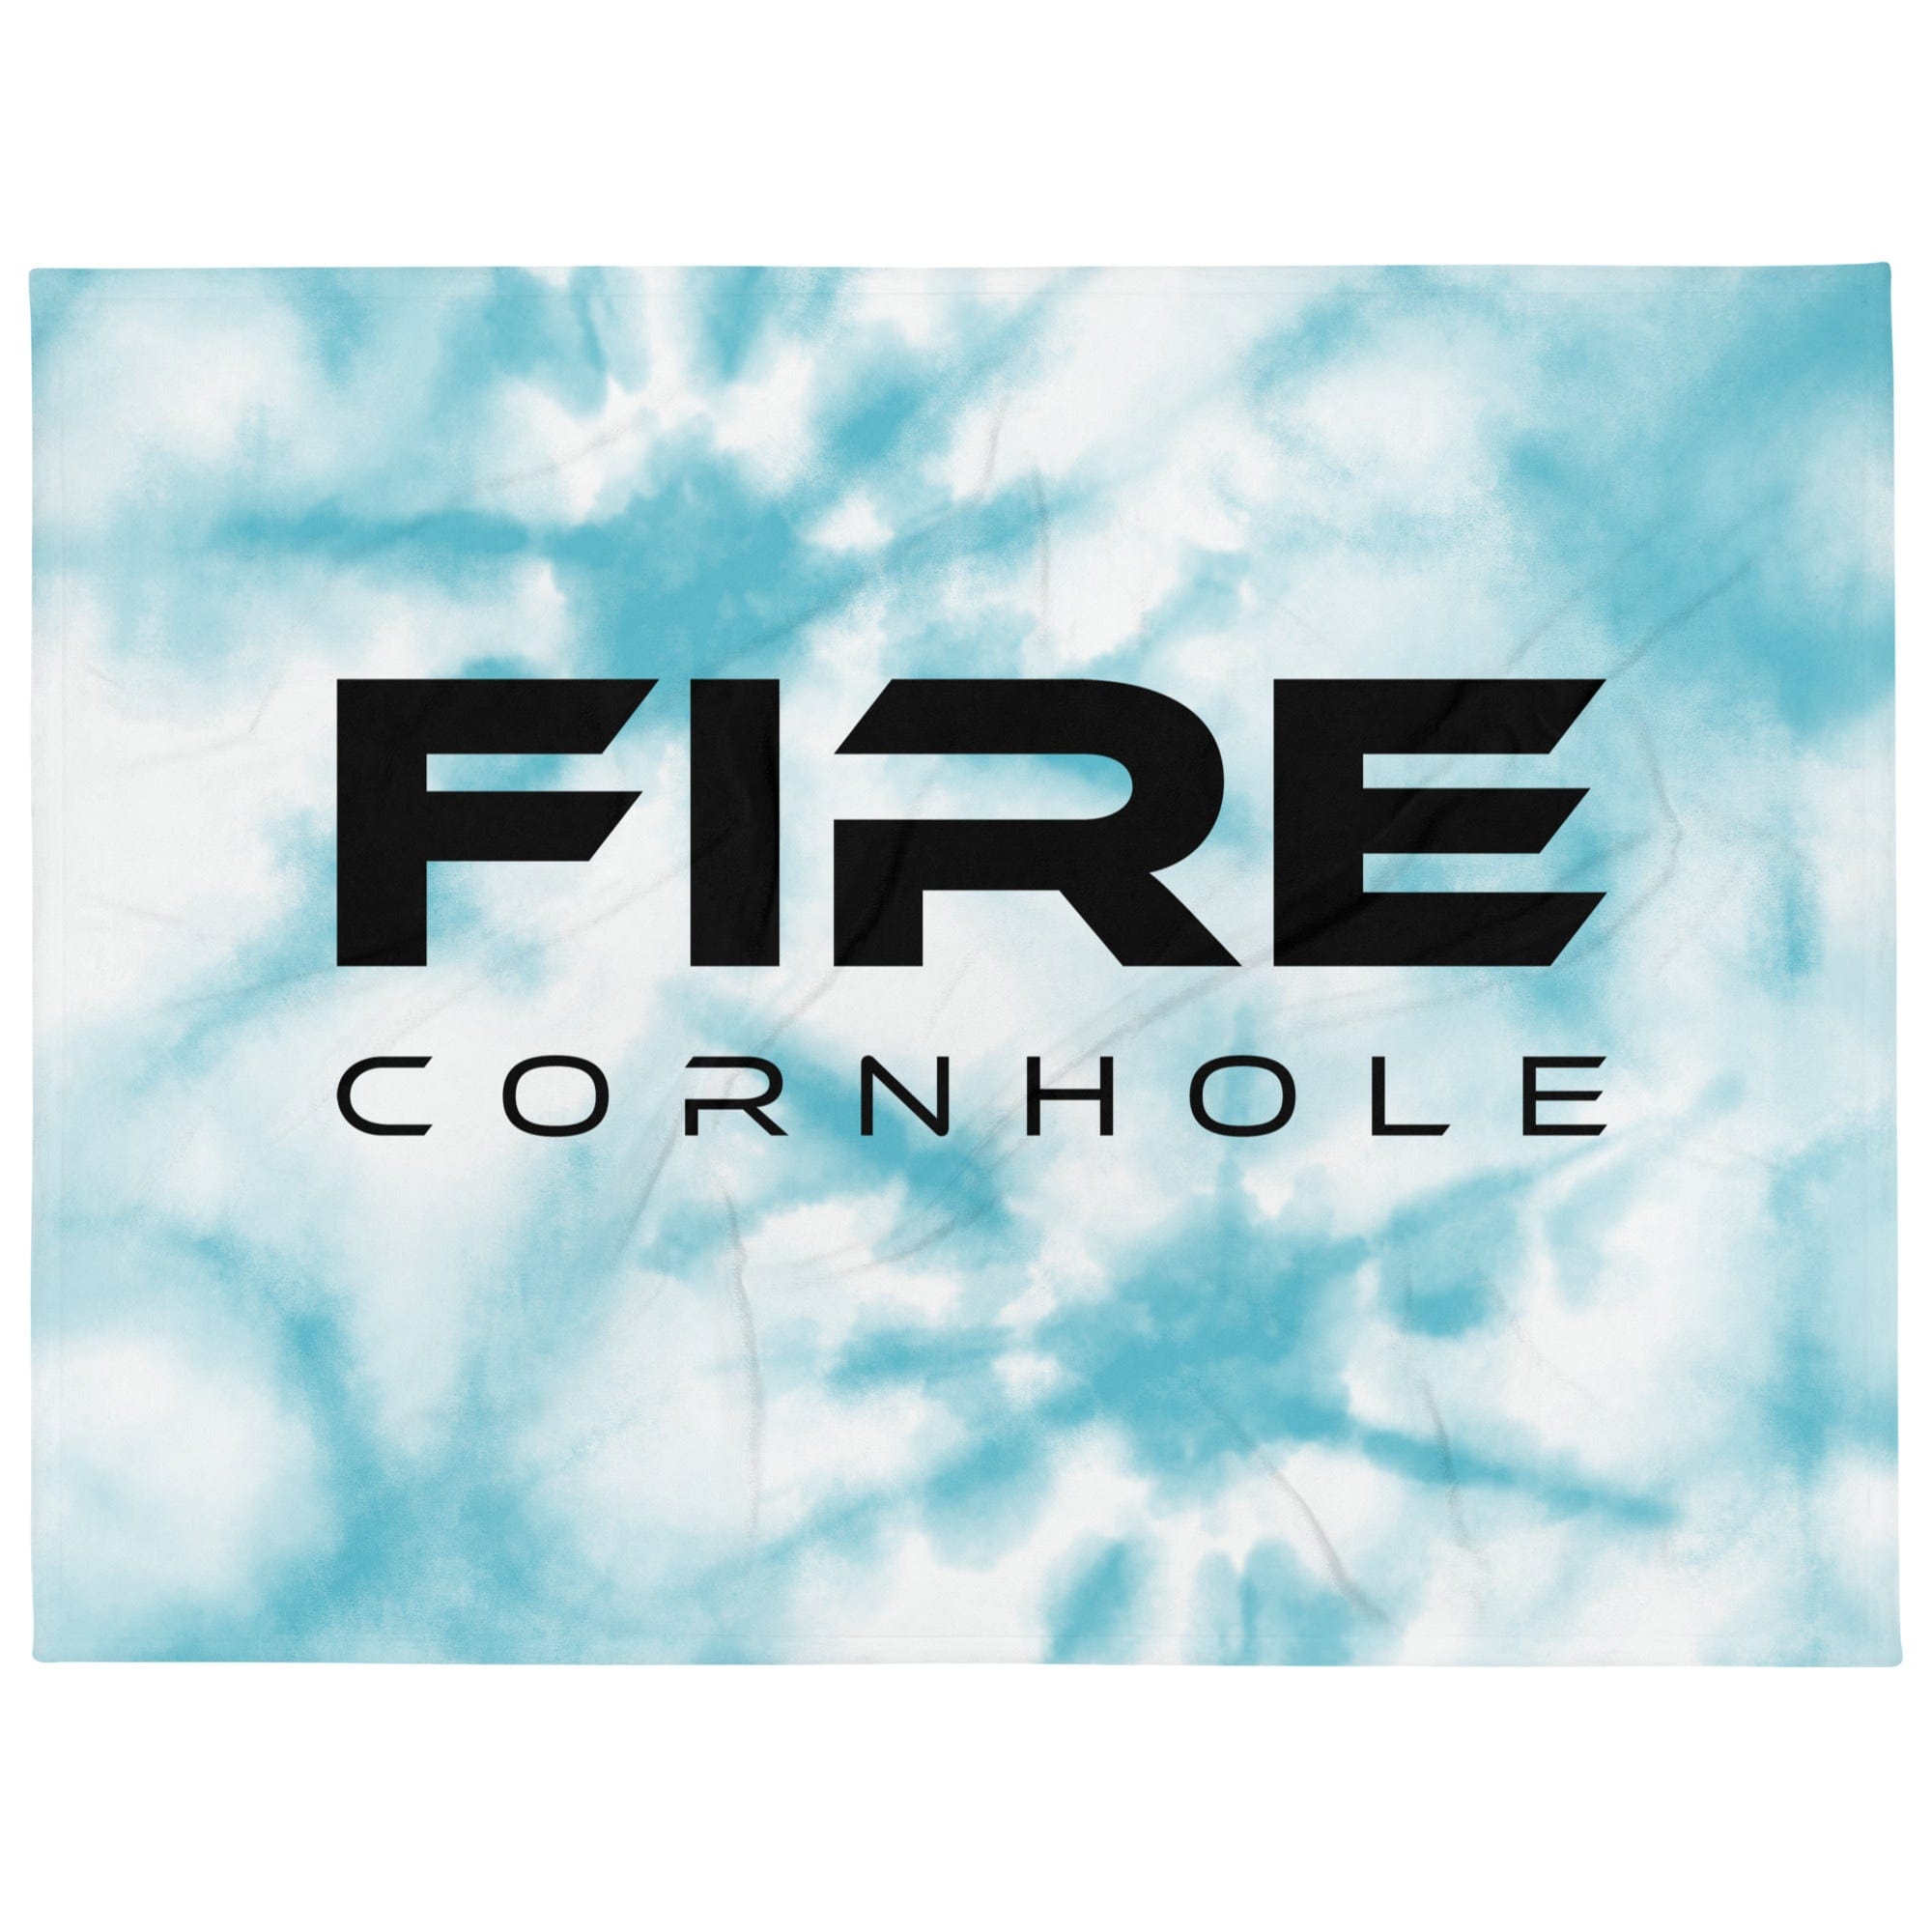 Fire Cornhole throw blanket with tie-dye pattern